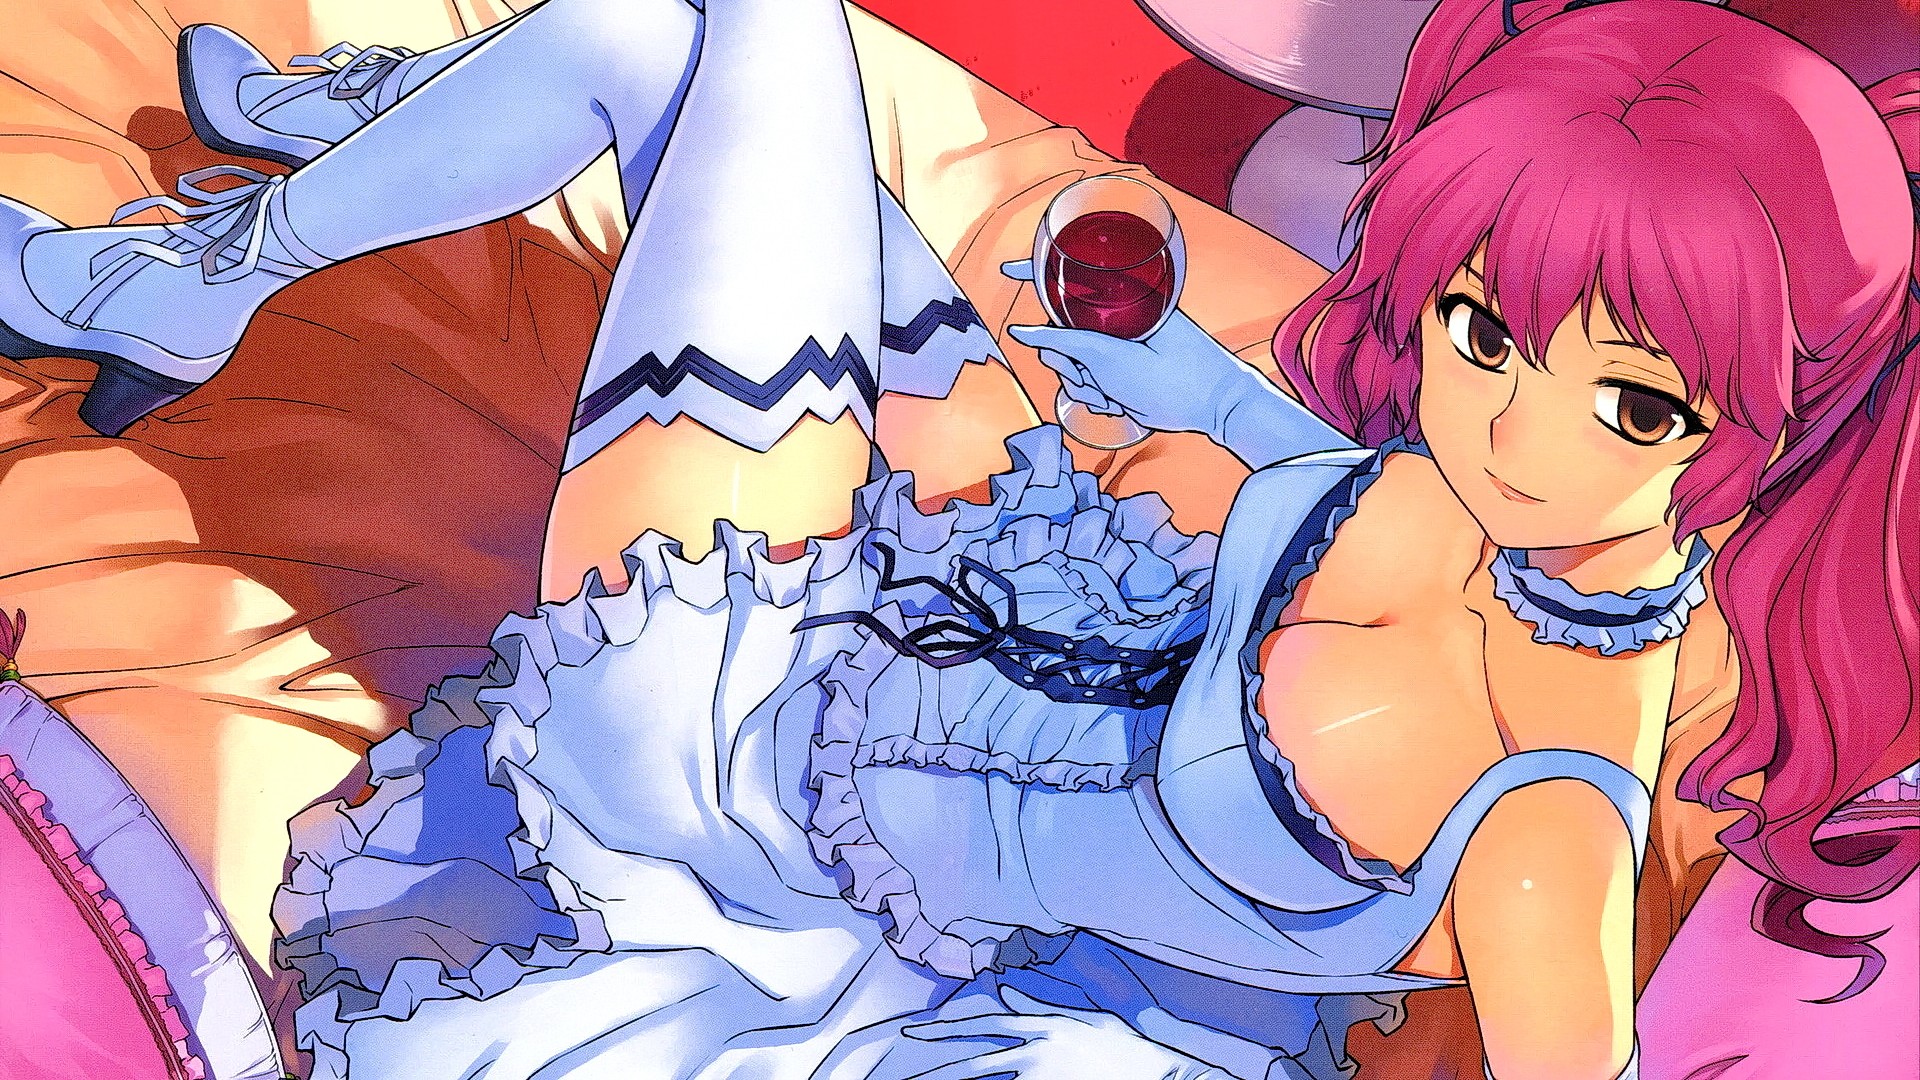 Anime 1920x1080 anime anime girls Freezing zettai ryouiki boobs cleavage stockings pink hair long hair